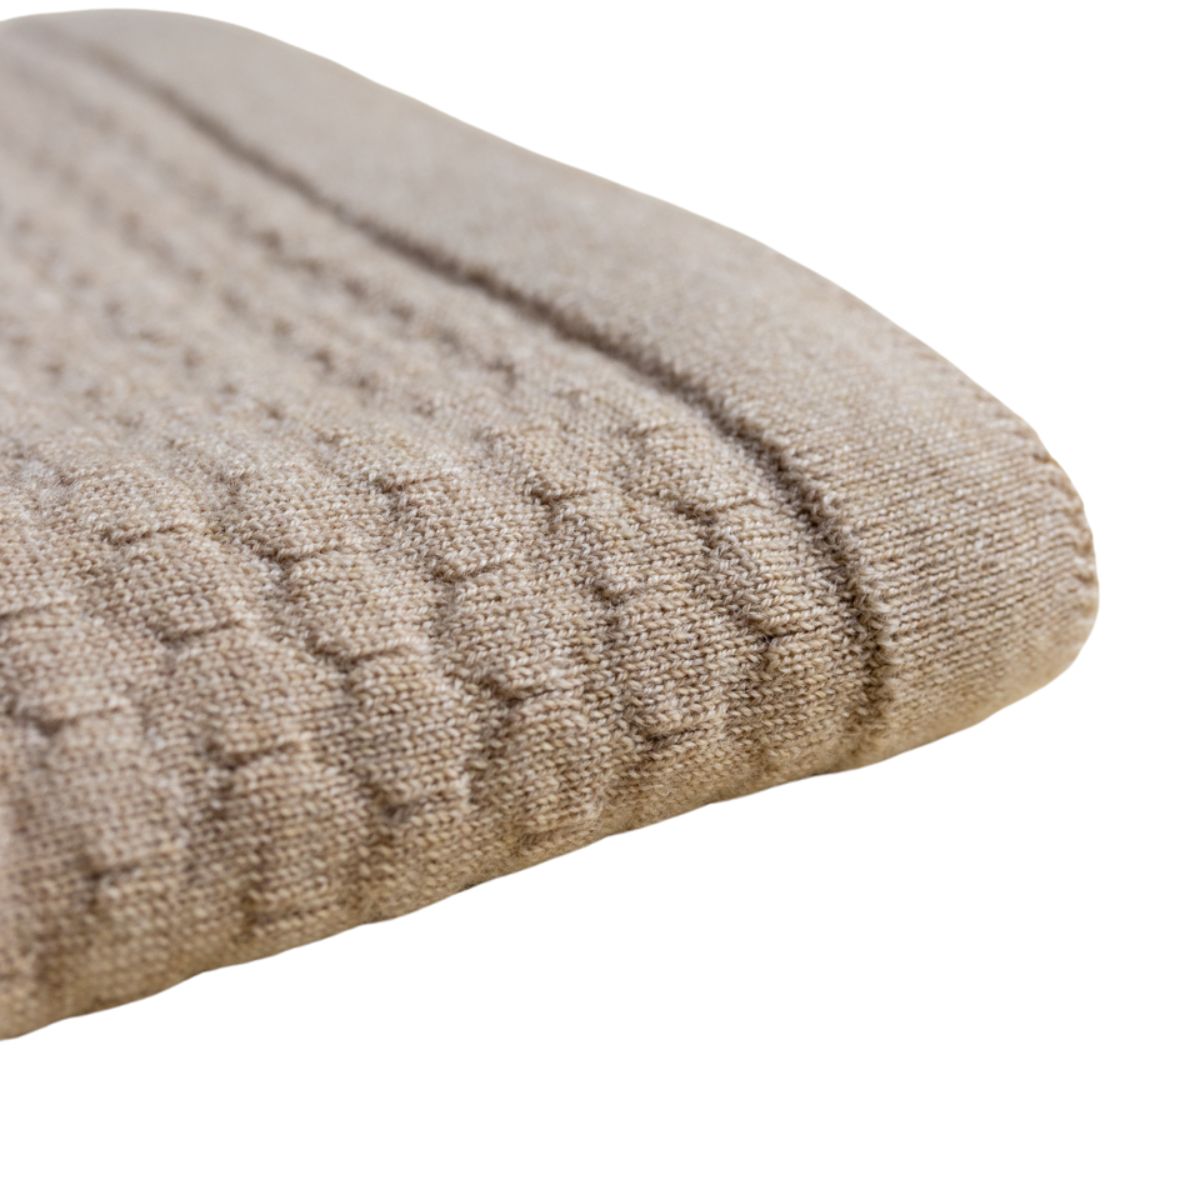 Deken frankie van Hvid, in sand, biedt warmte en comfort voor je baby met zacht merino lamswol. Aan twee kanten te gebruiken. Gebruik als deken of wikkeldoek. In twee kleuren. VanZus